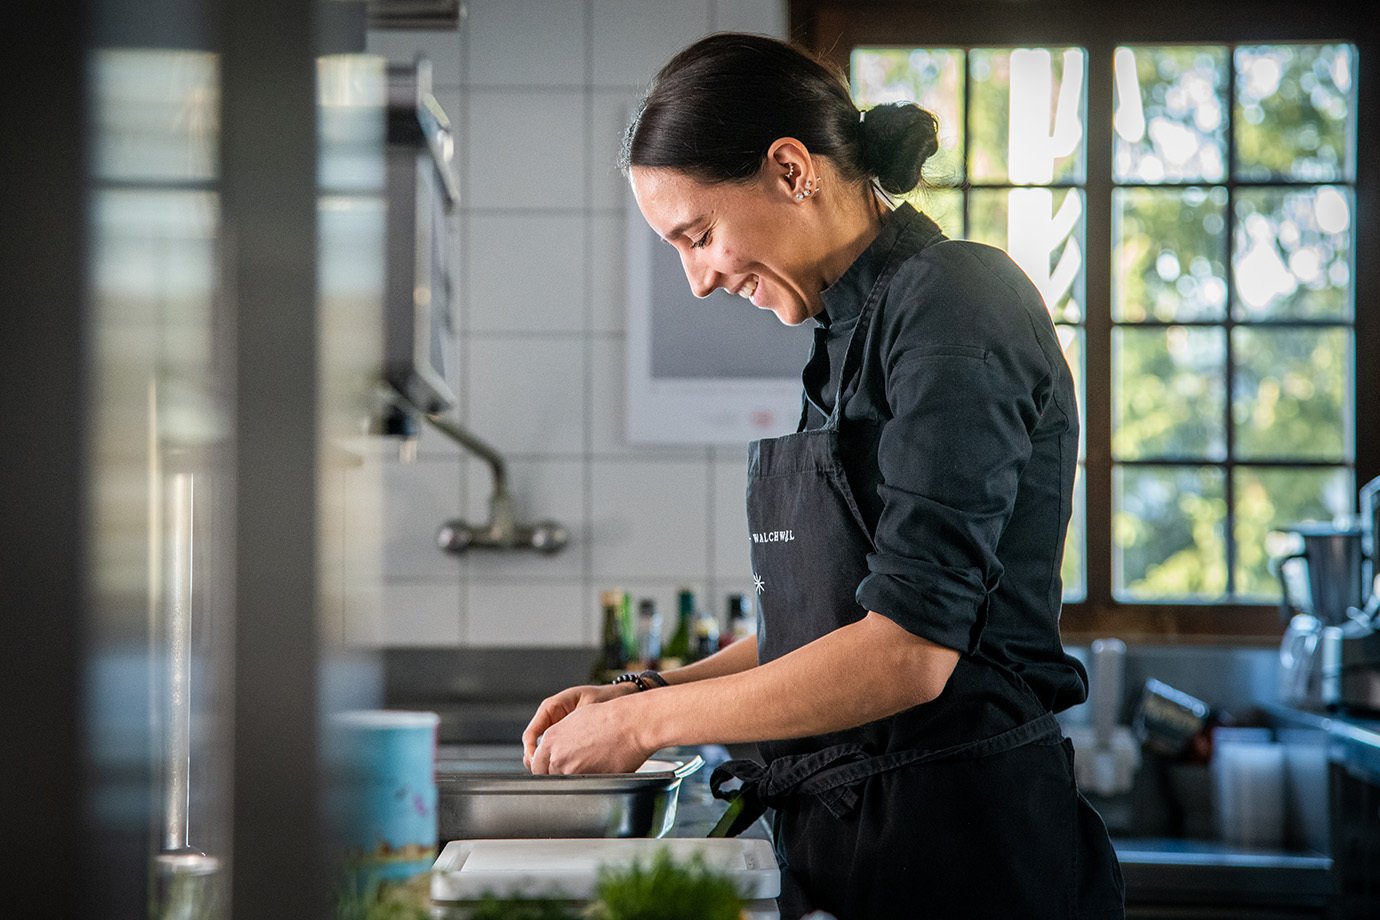 Noémie Bernard führt den mit 15 Gault-Millau-Punkten ausgezeichneten «Sternen» in Walchwil am Zugersee. Ihre Küche überzeugt mit frischen, lokalen Produkten und einem vollmundigem Geschmack.